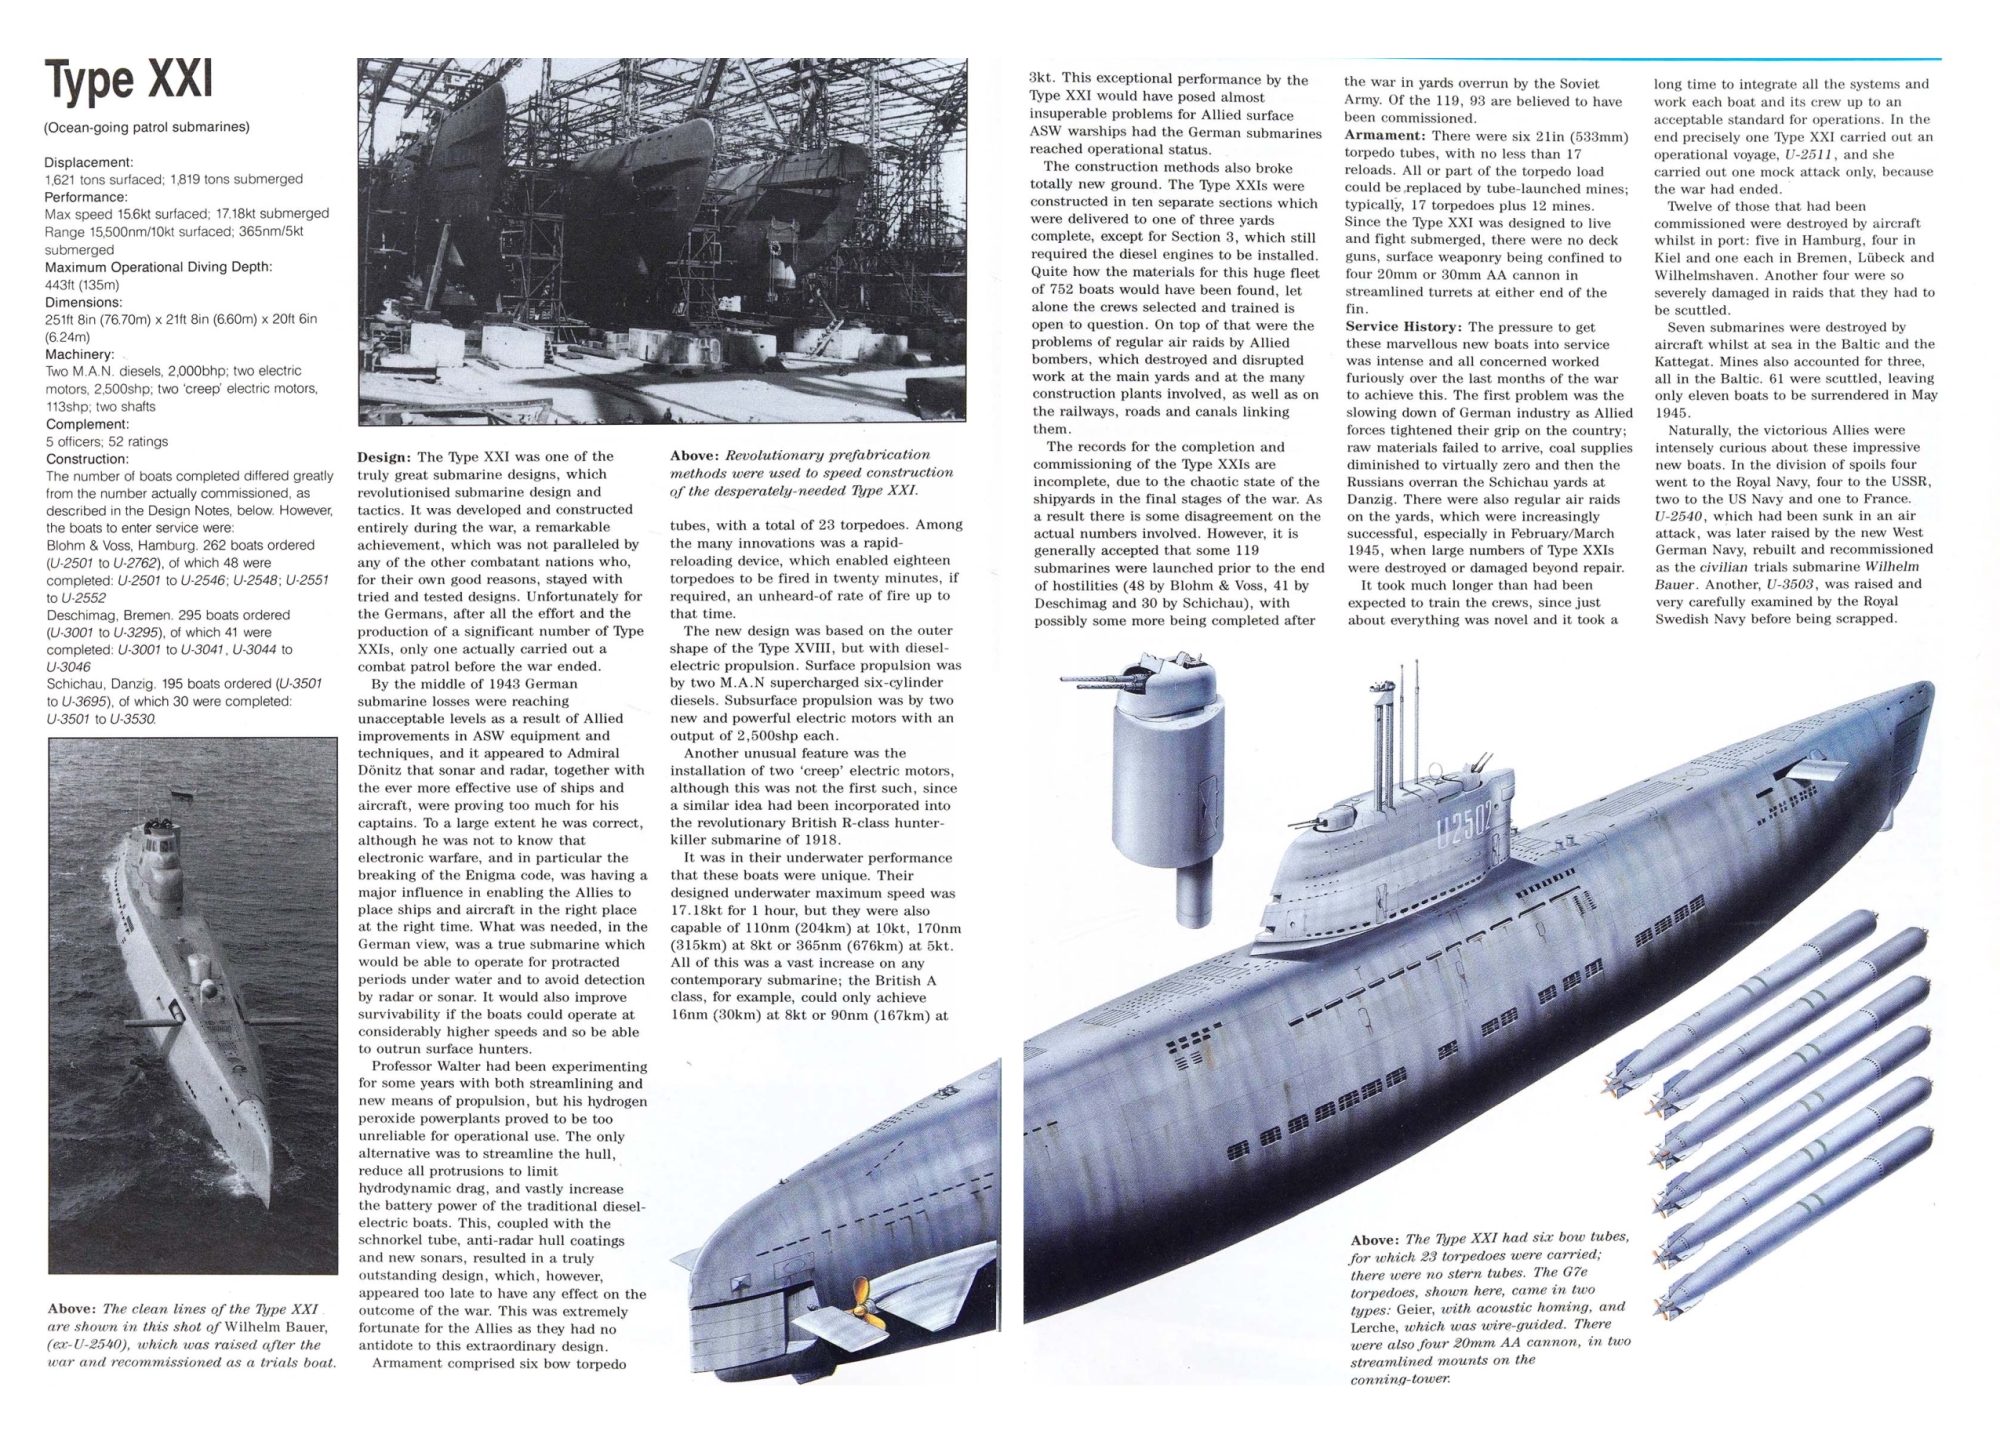 1706490583 892 German WWII Submarine Designs